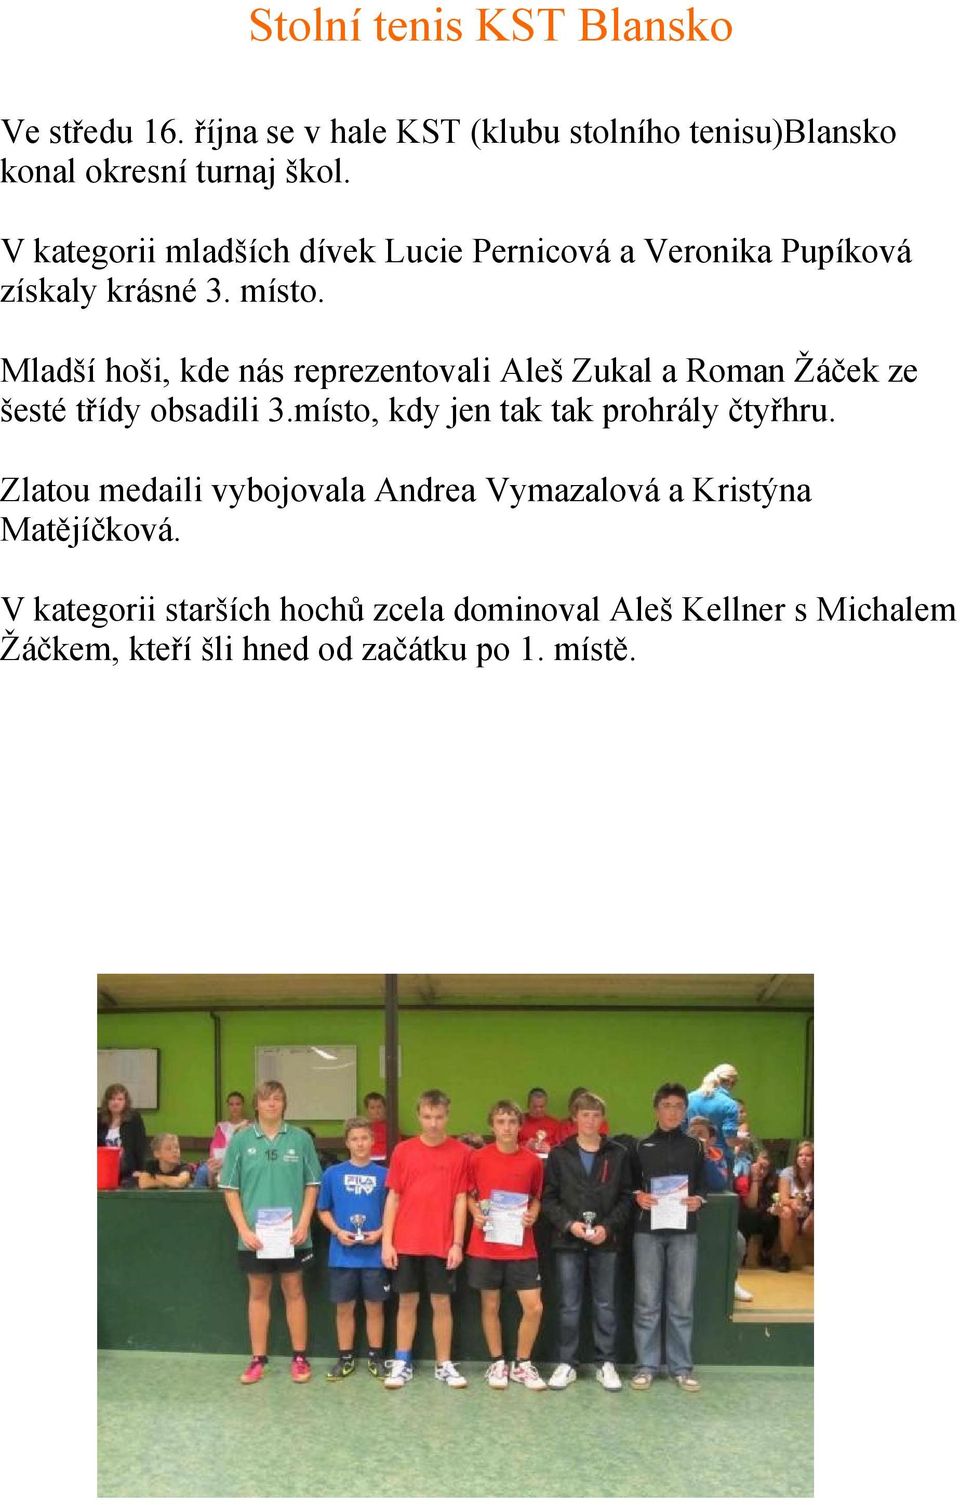 Mladší hoši, kde nás reprezentovali Aleš Zukal a Roman Žáček ze šesté třídy obsadili 3.místo, kdy jen tak tak prohrály čtyřhru.